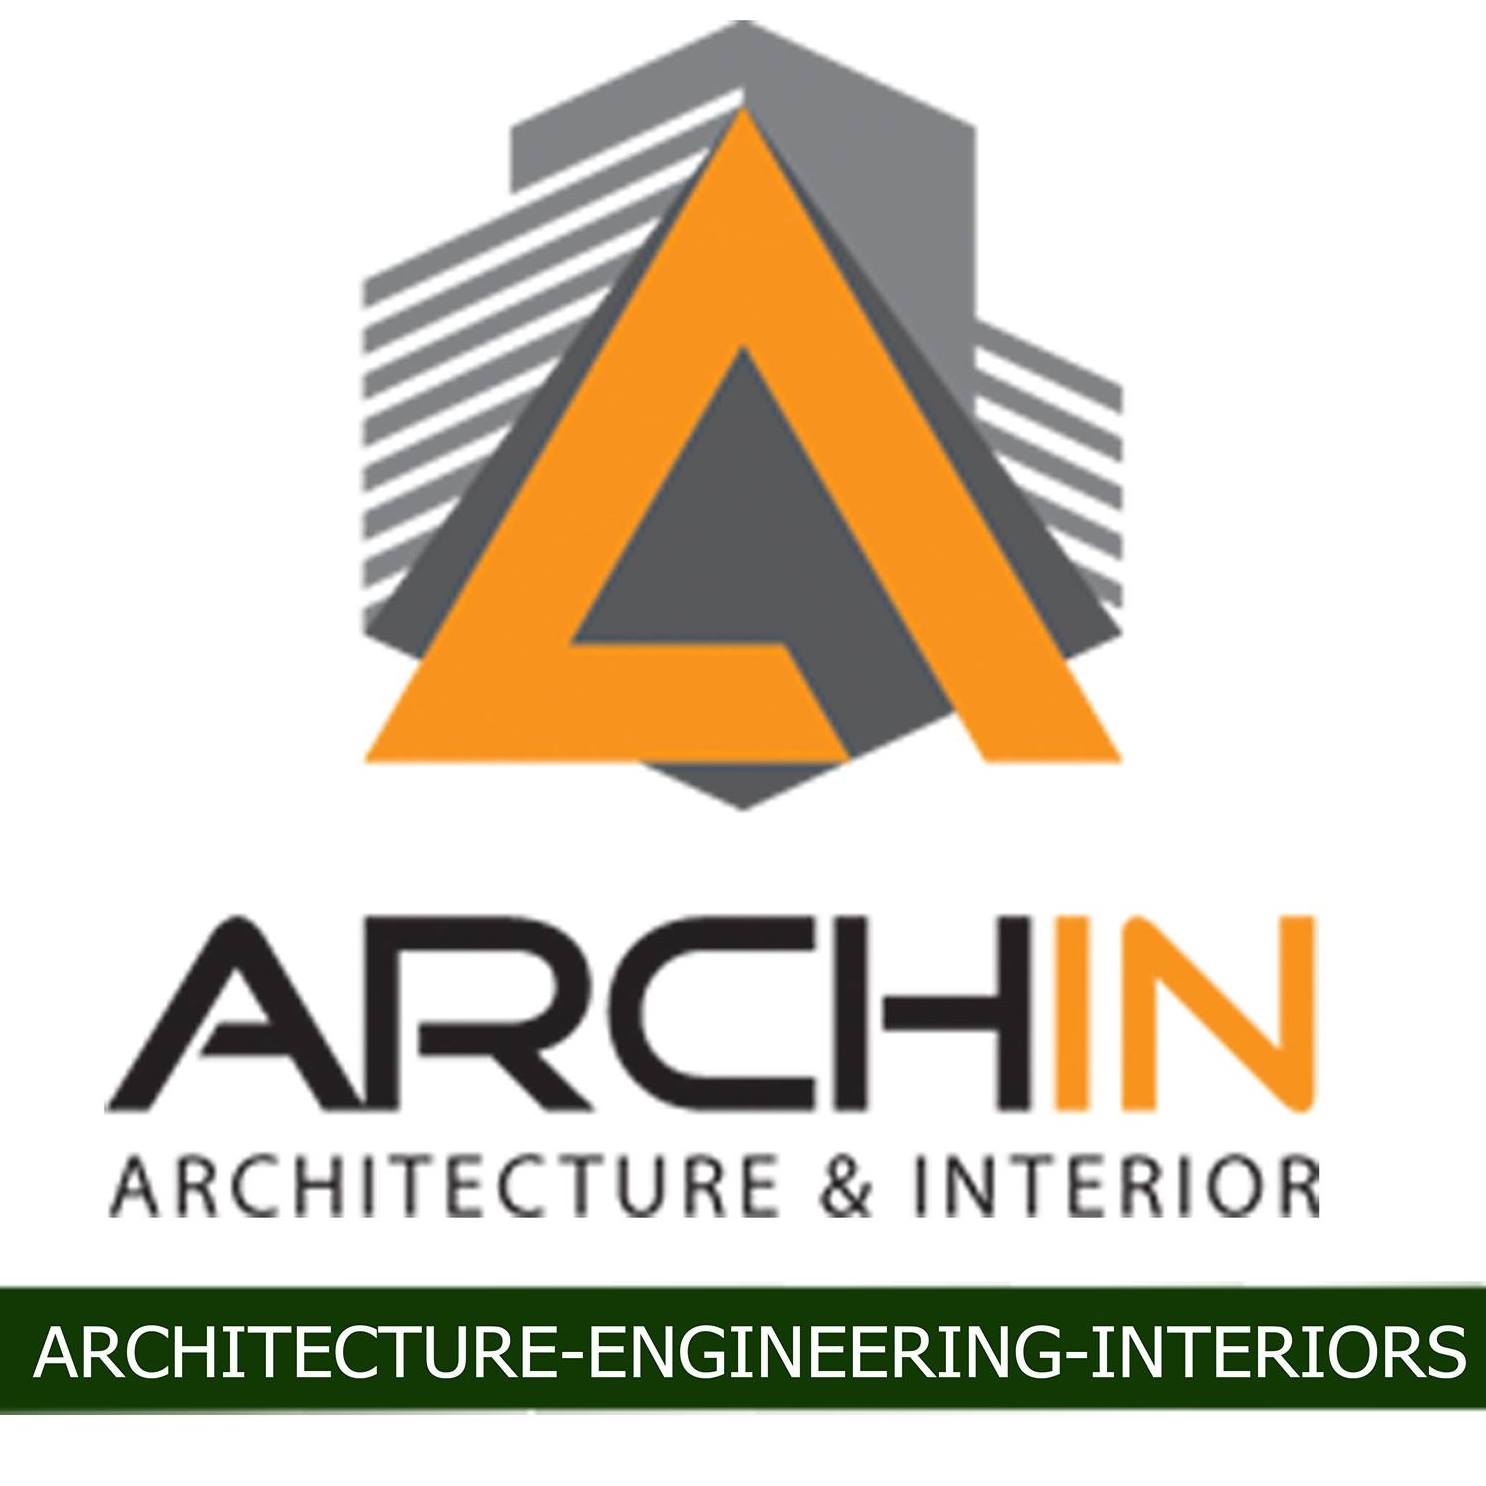 ARCHIN Architecture & Interior Studio|Architect|Professional Services